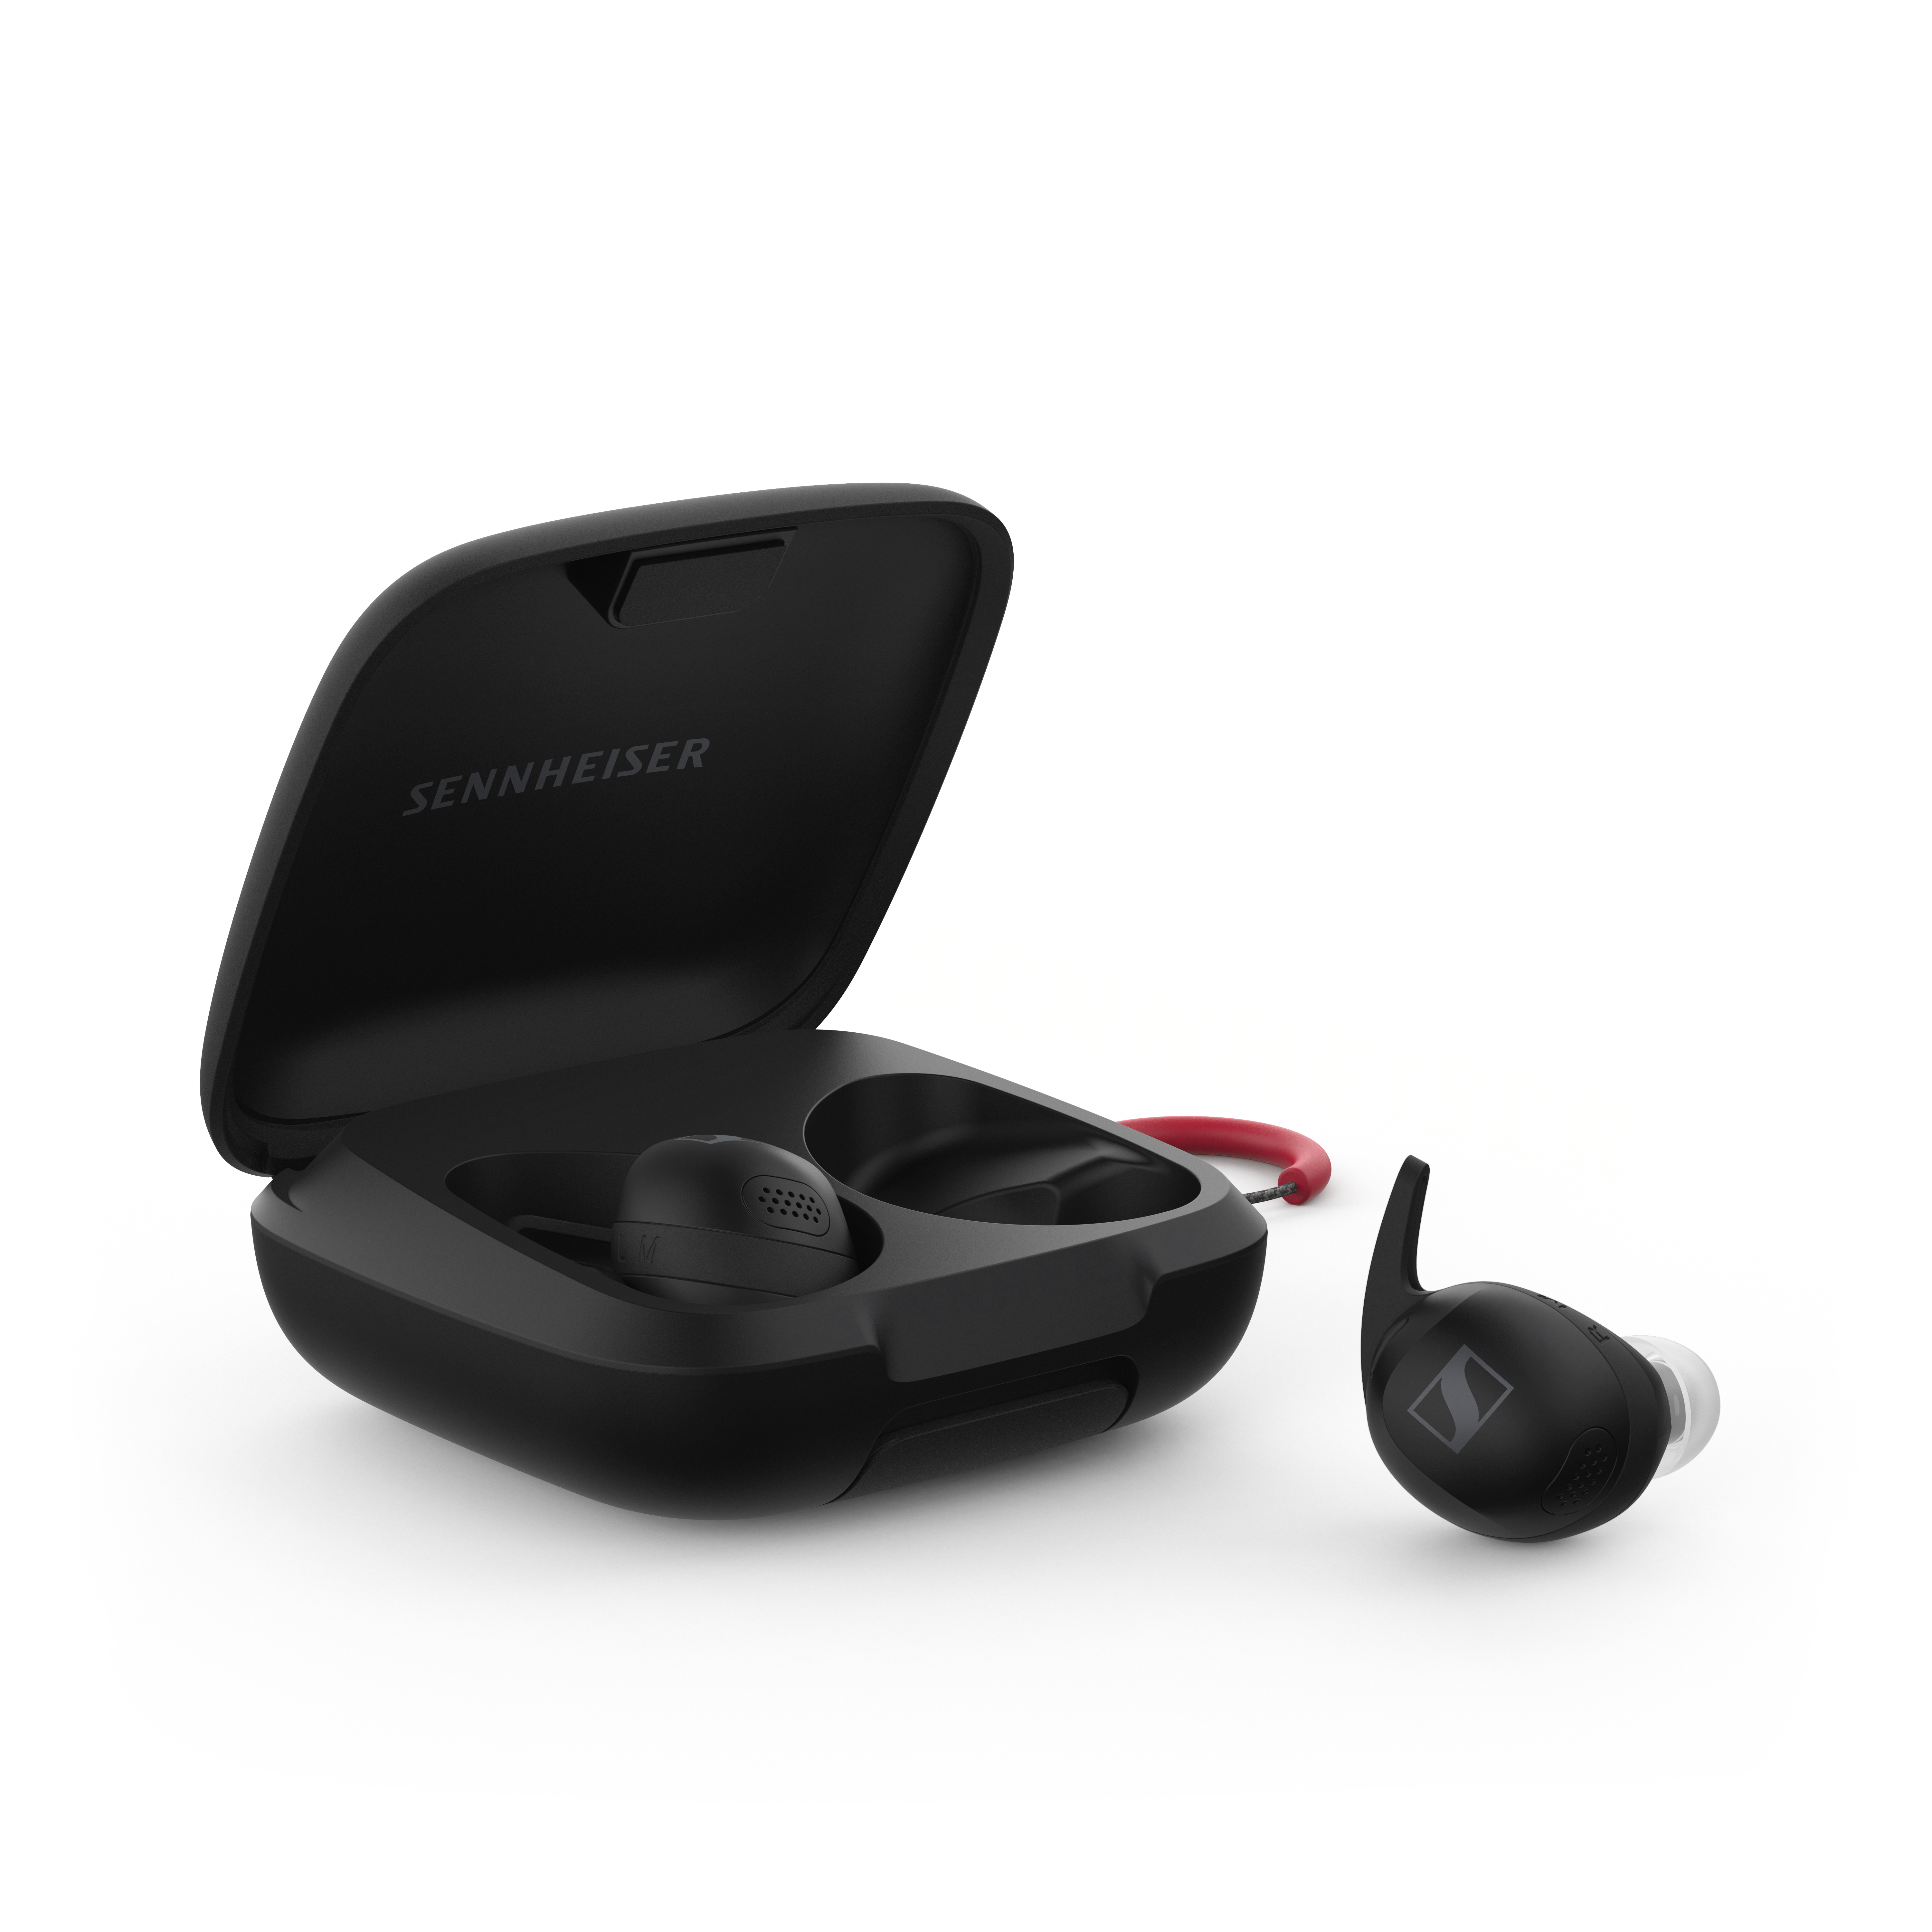 New Sennheiser Headphone Releases